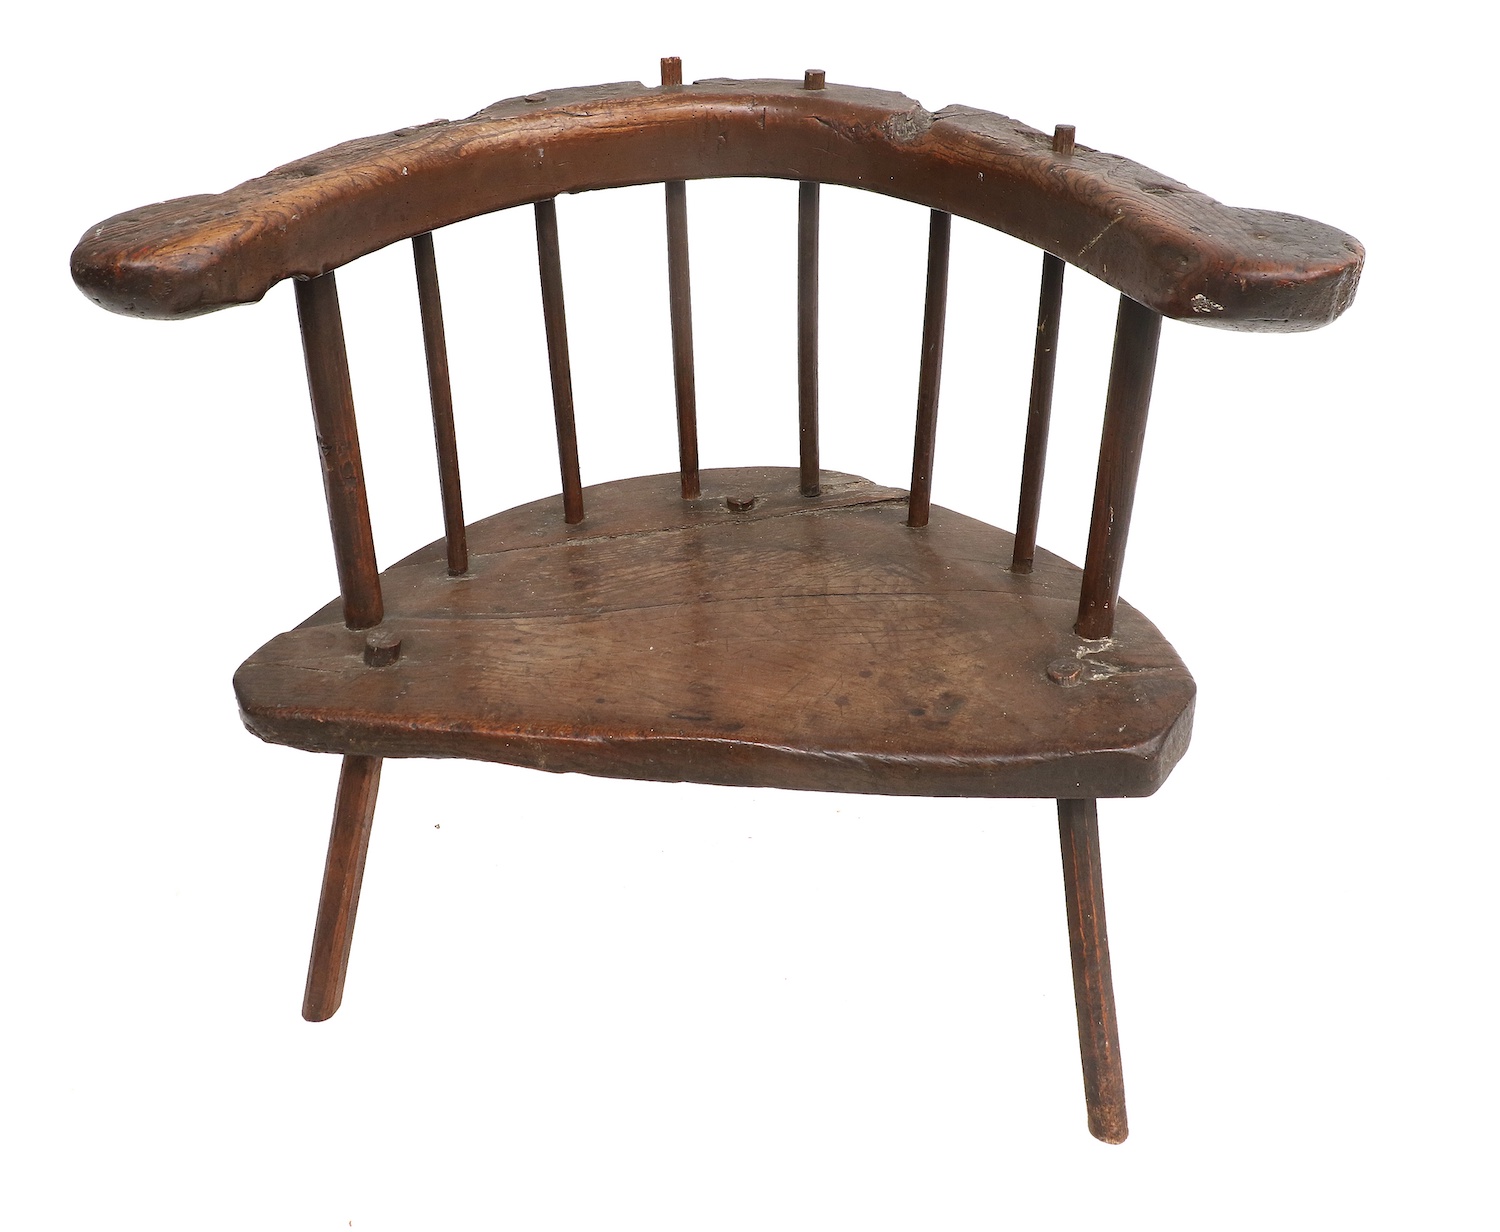 An antique oak primitive chair